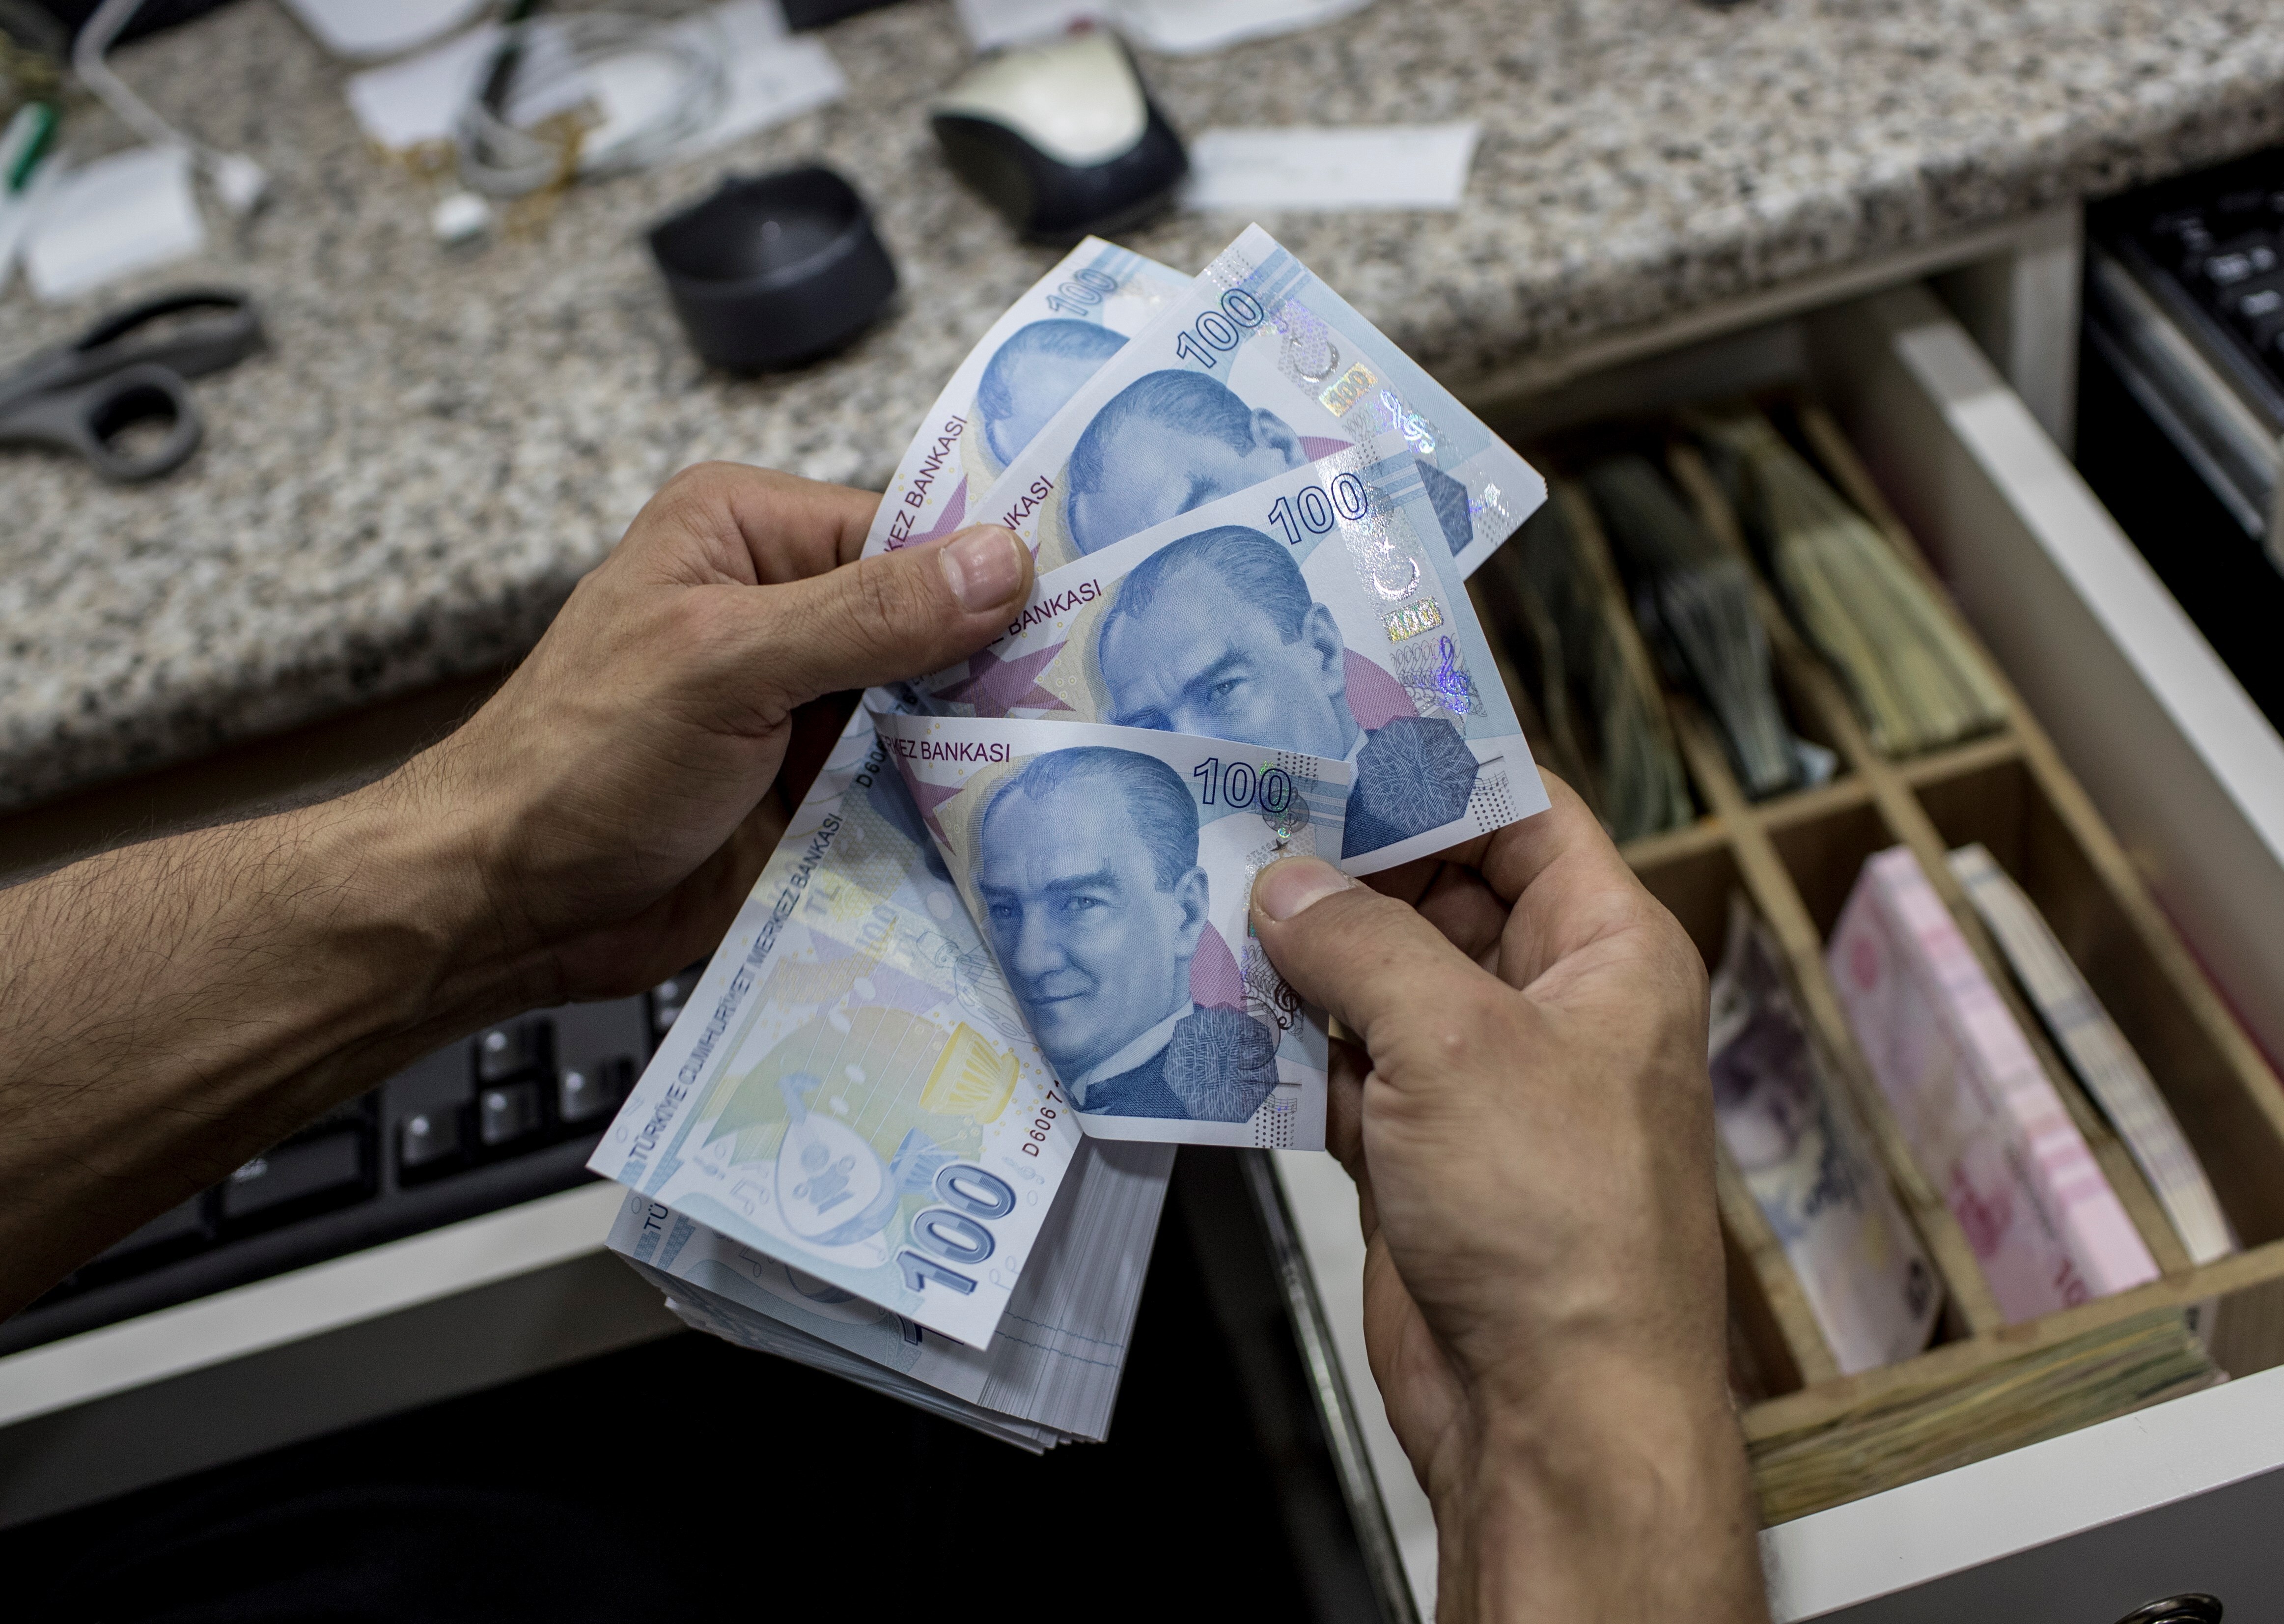 Cae la lira turca y marca un nuevo mínimo histórico tras la victoria de Erdogan